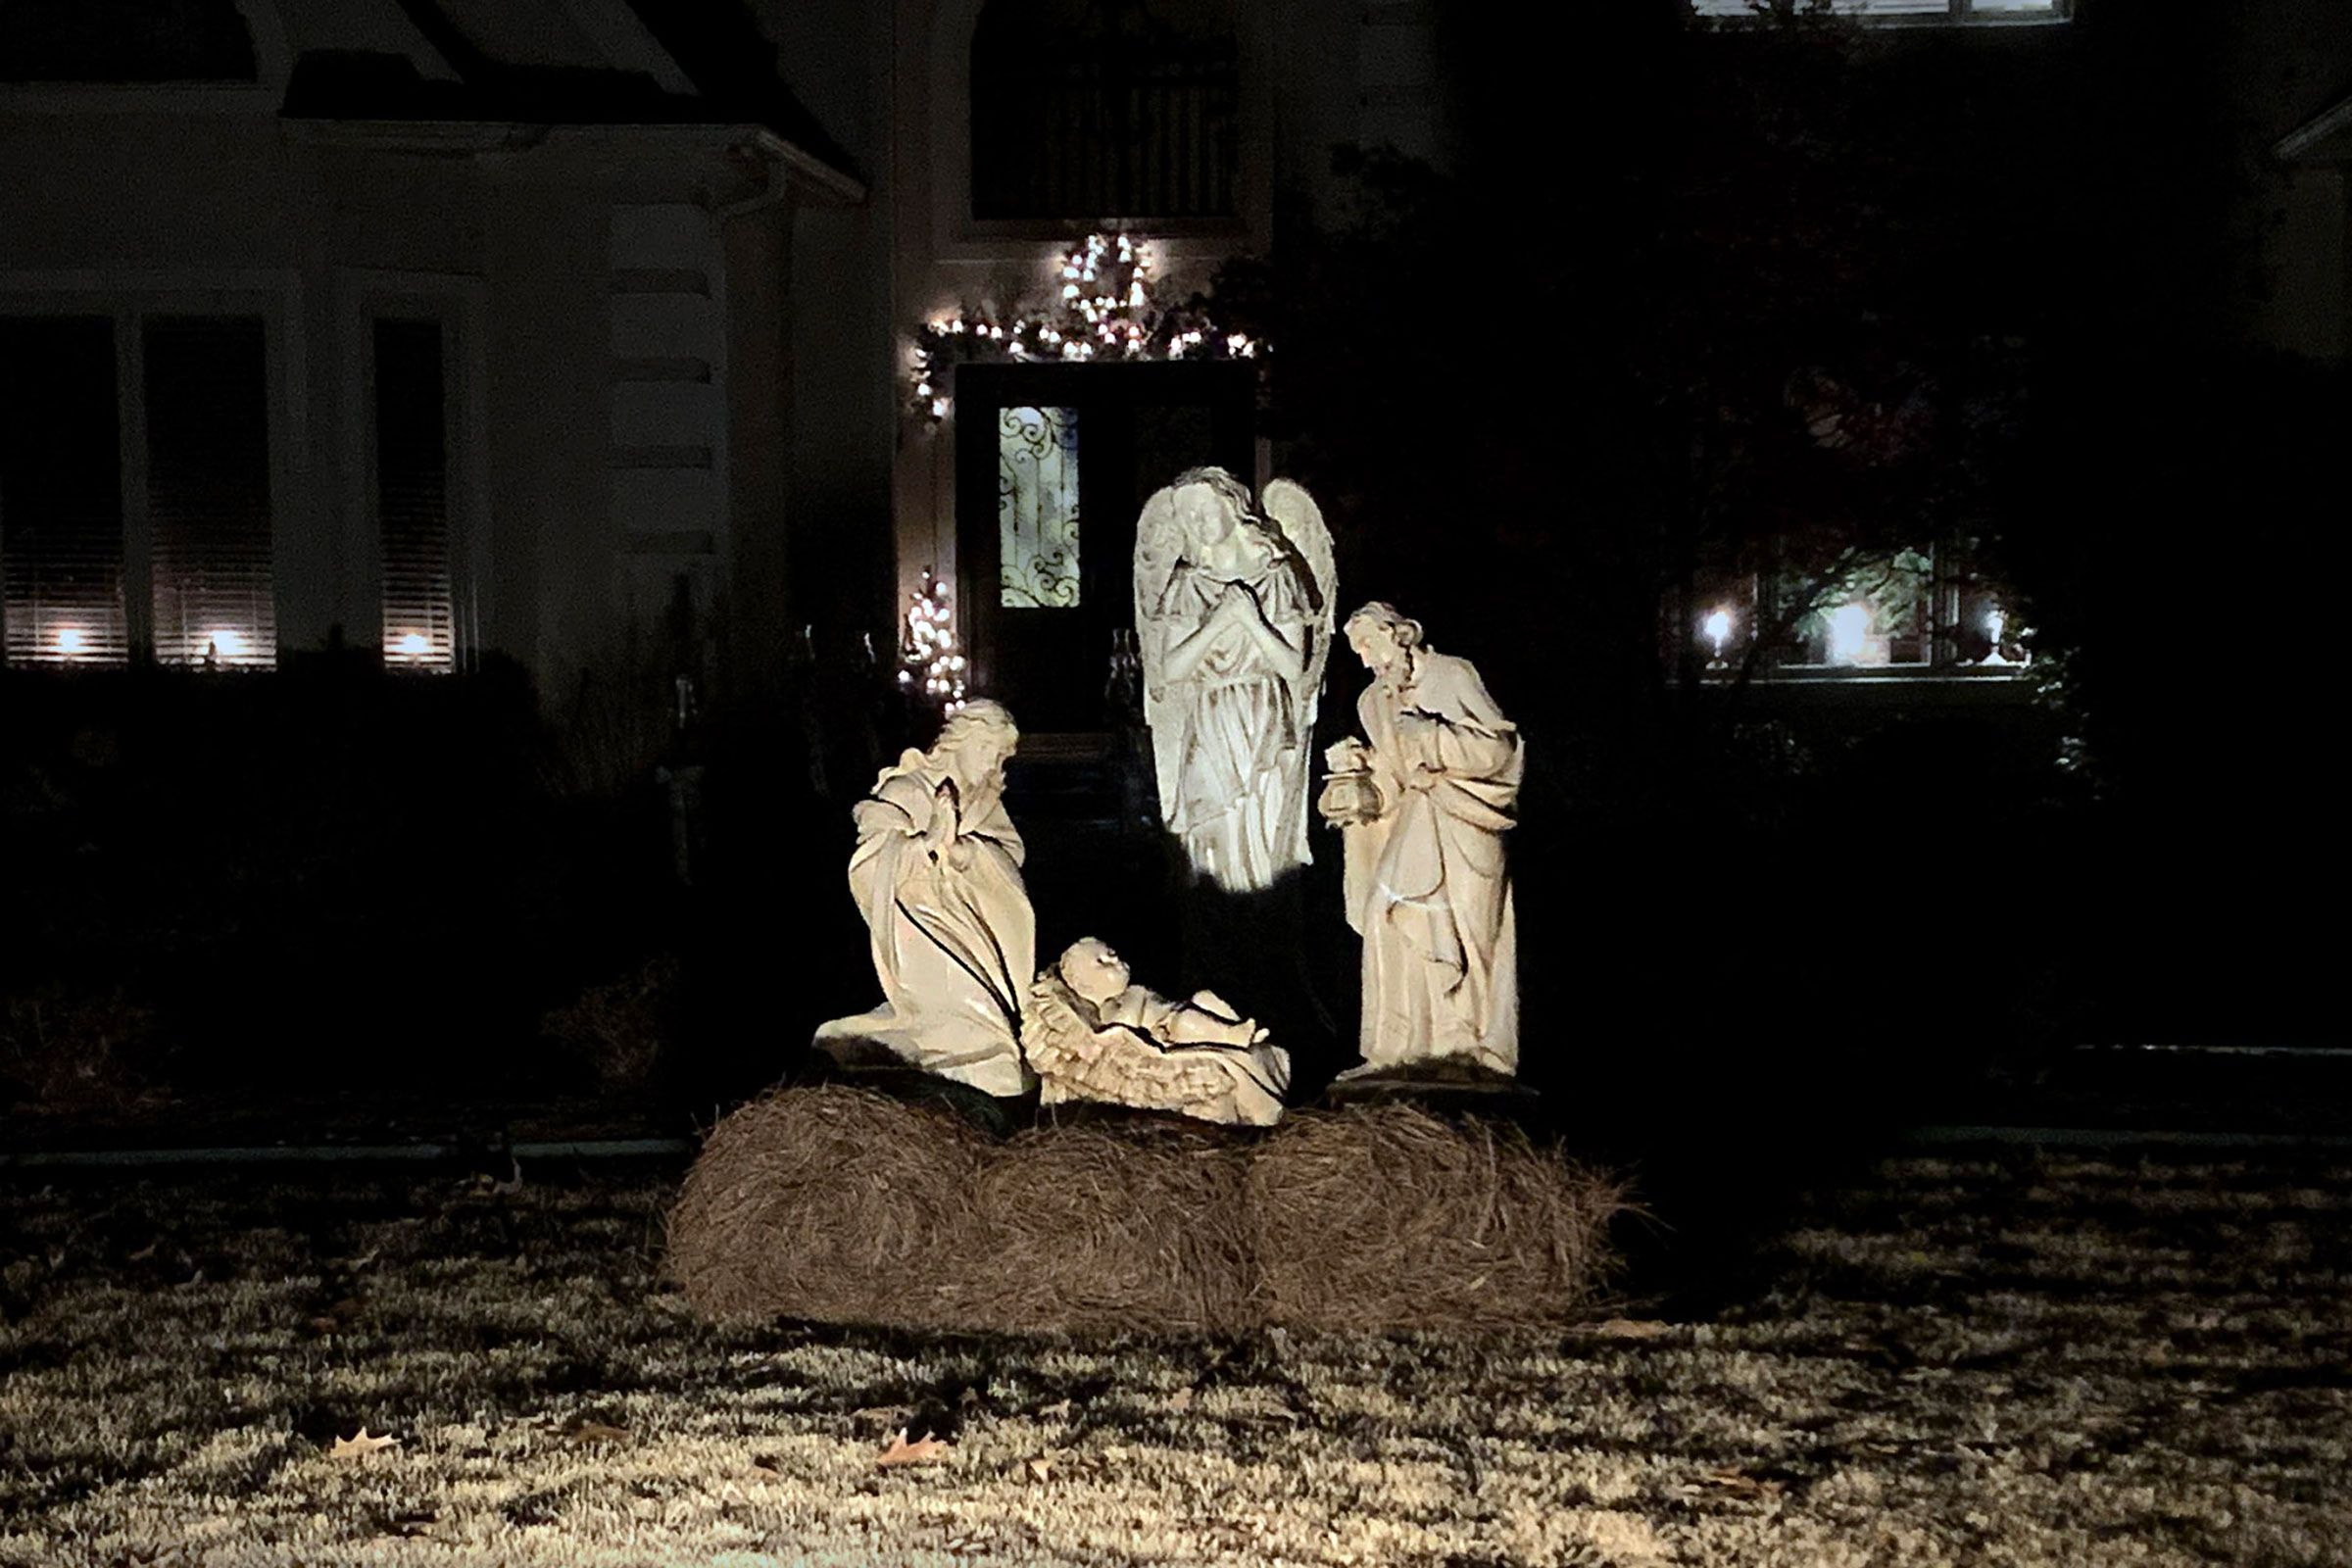 A Christmas manger scene